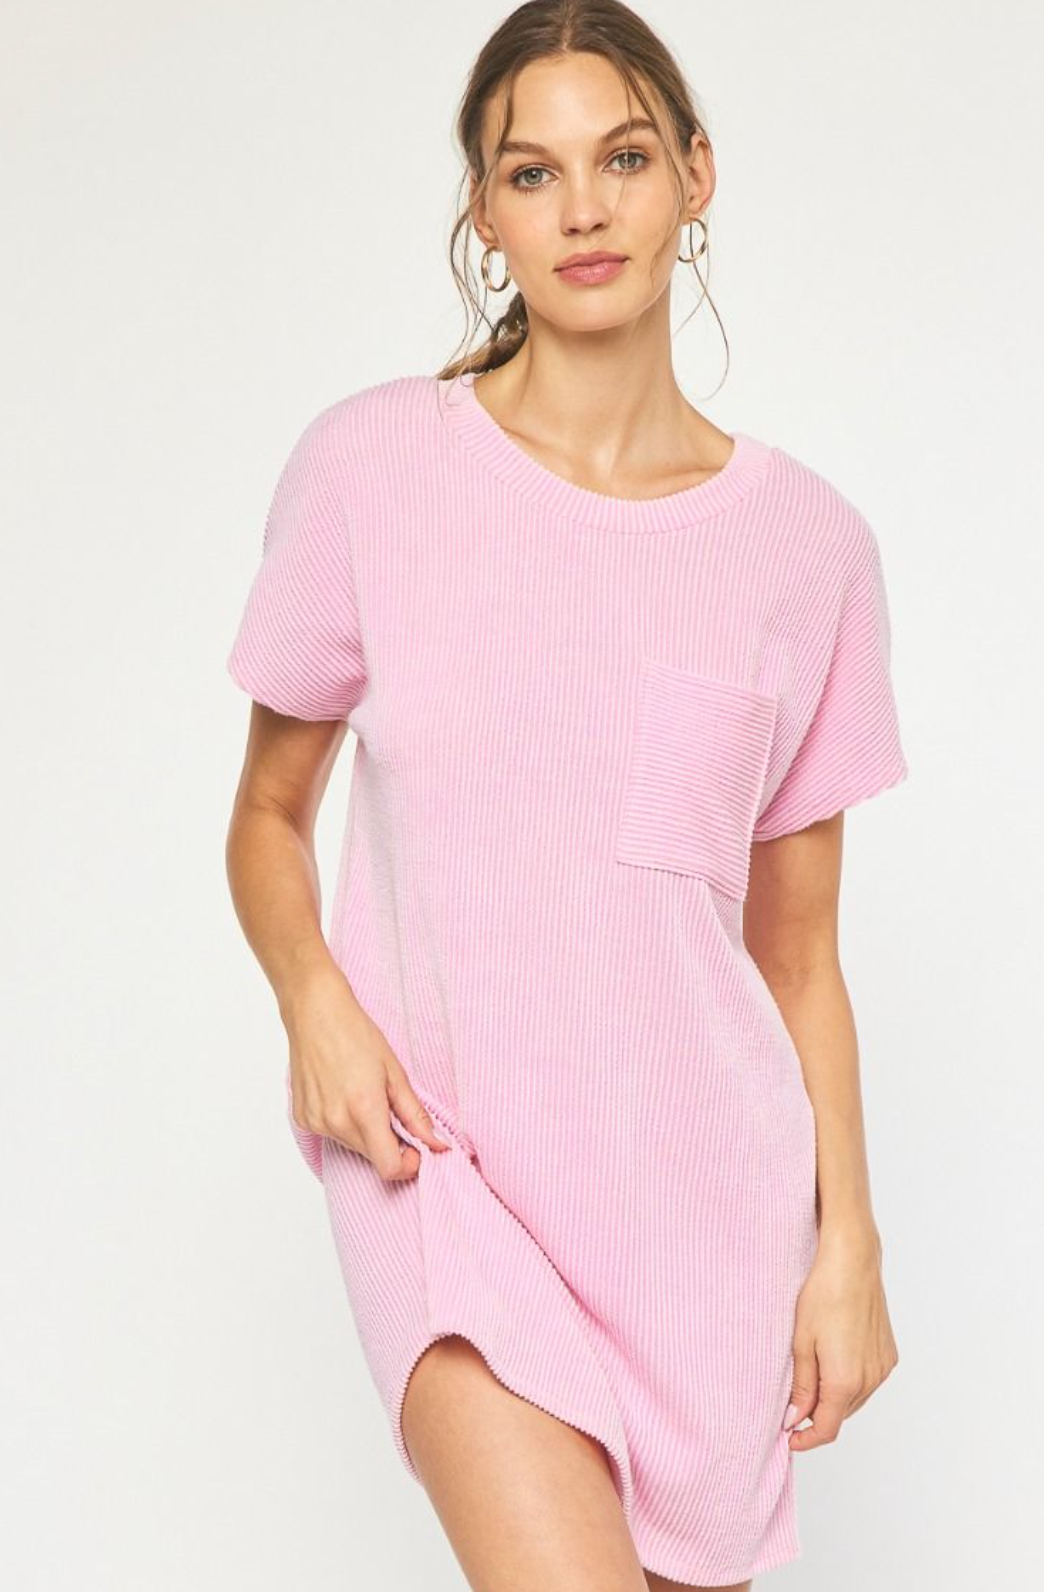 The Best Pink T-Shirt Dress